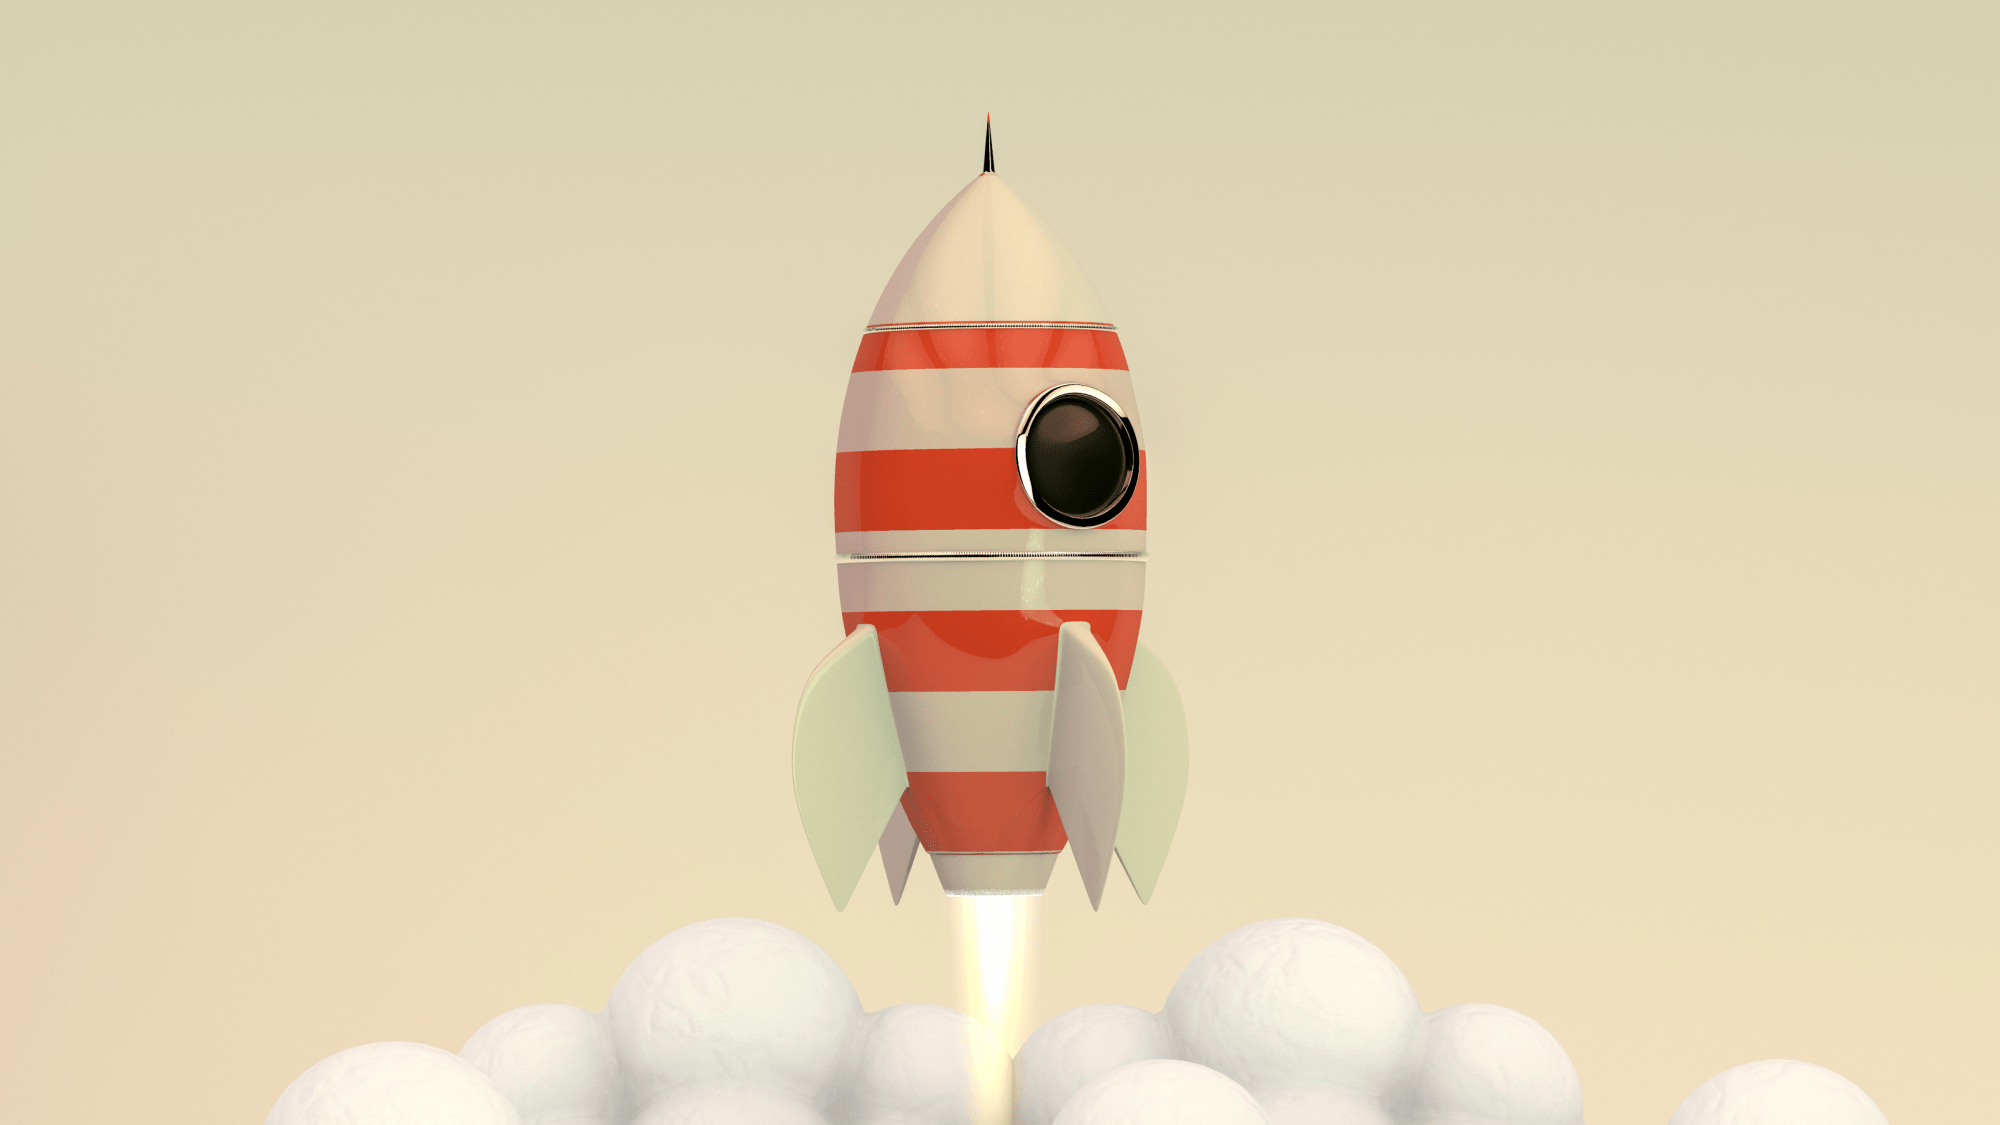 Een raket met rode strepen die opstijgt 